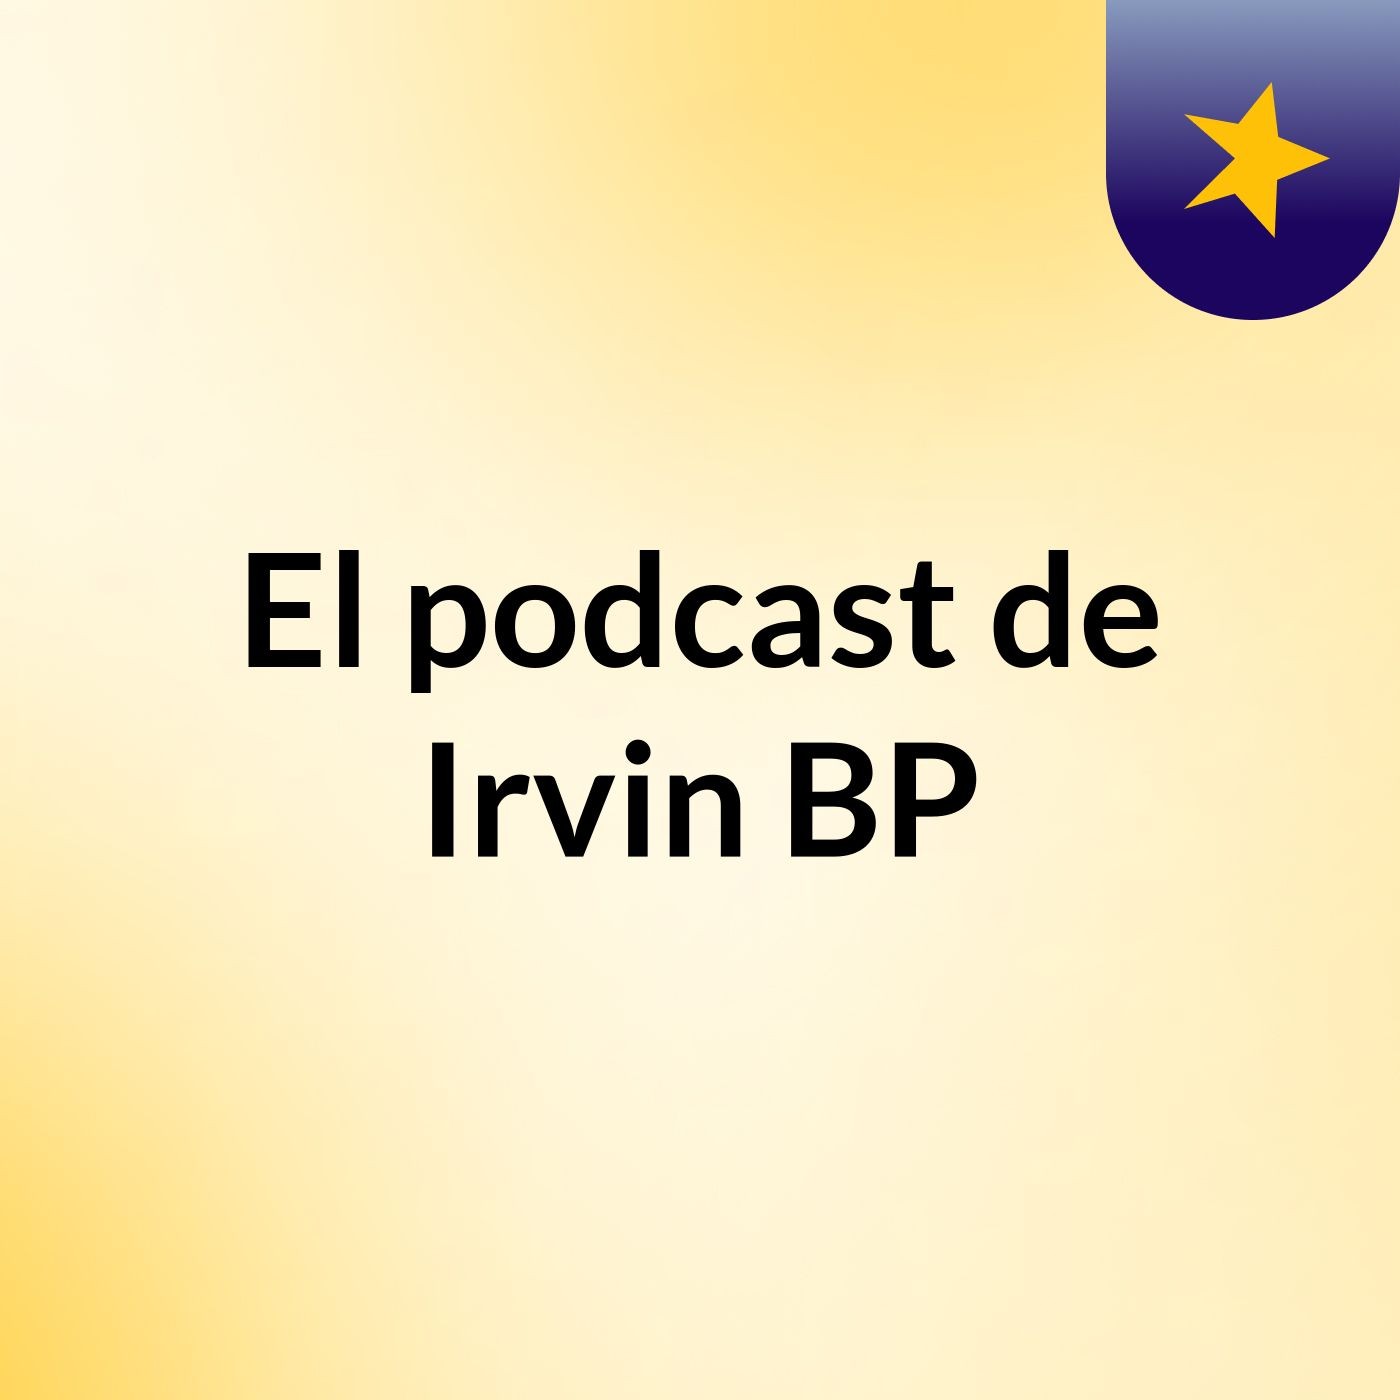 Episodio 2 - El podcast de Irvin BP